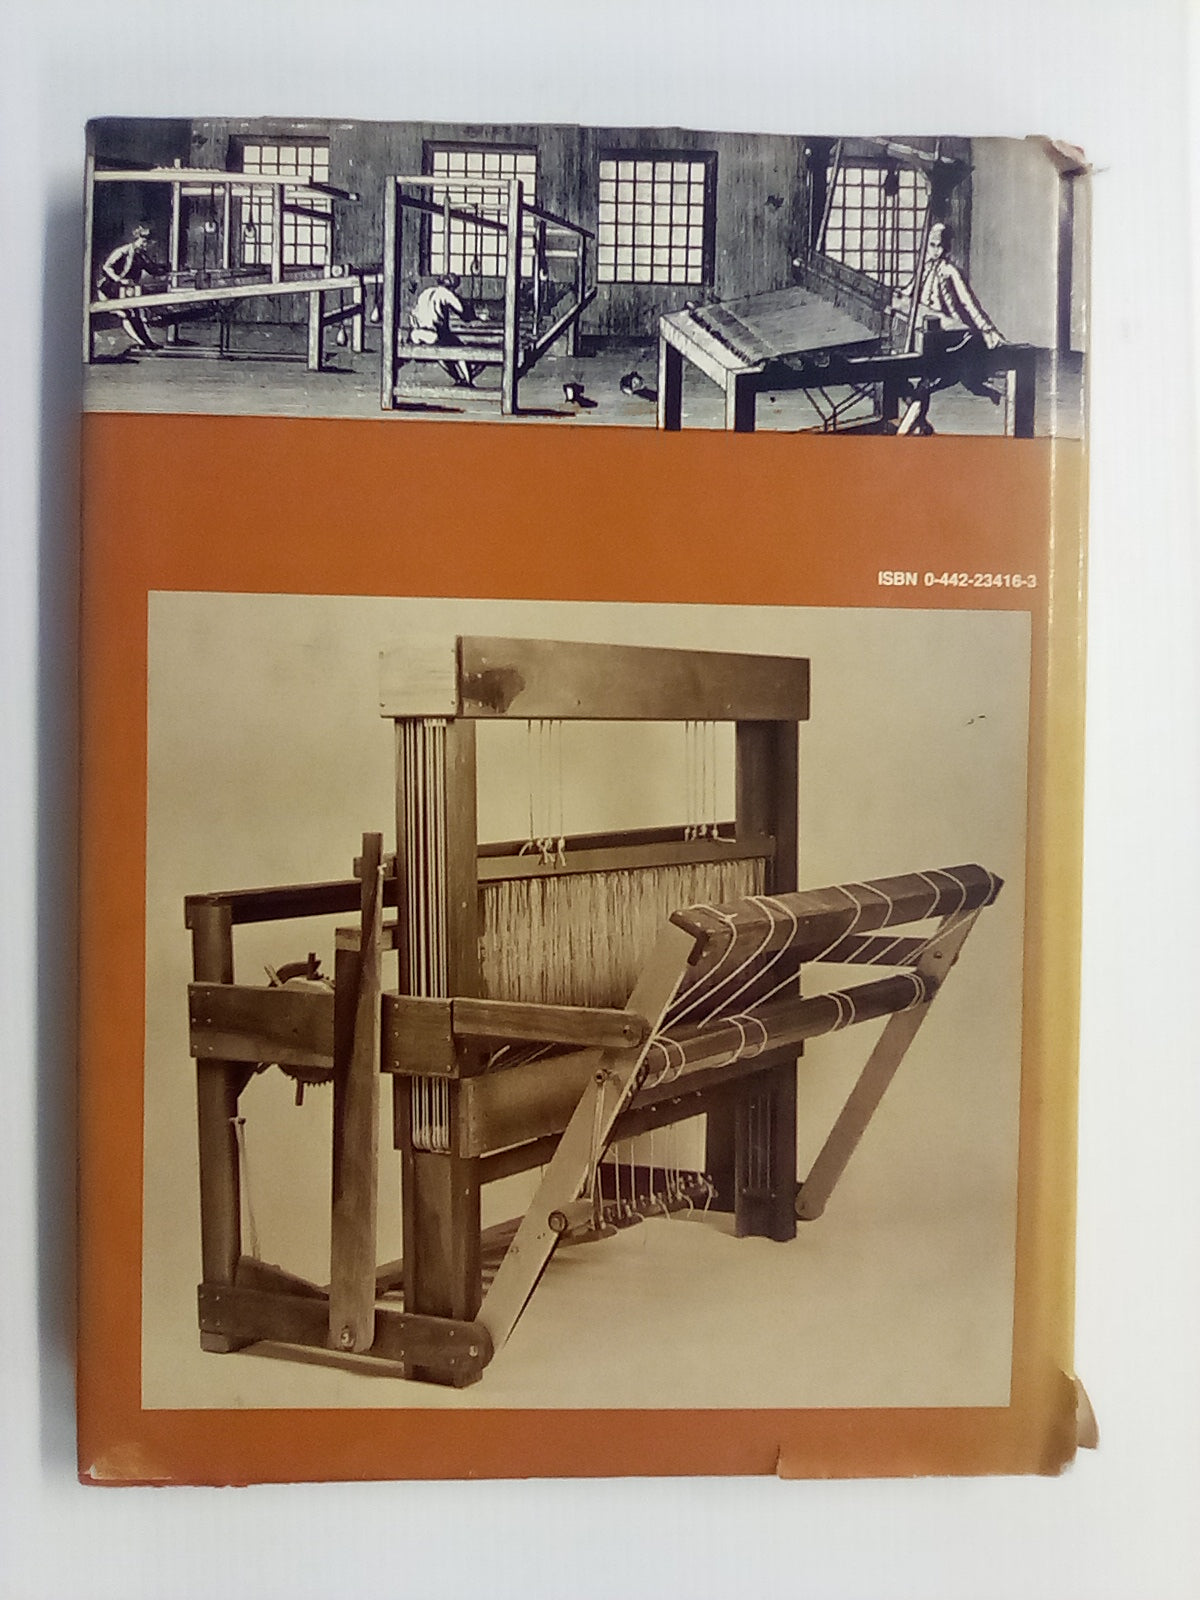 Loom Construction by J. Hjert and P. Von Rosenstiel